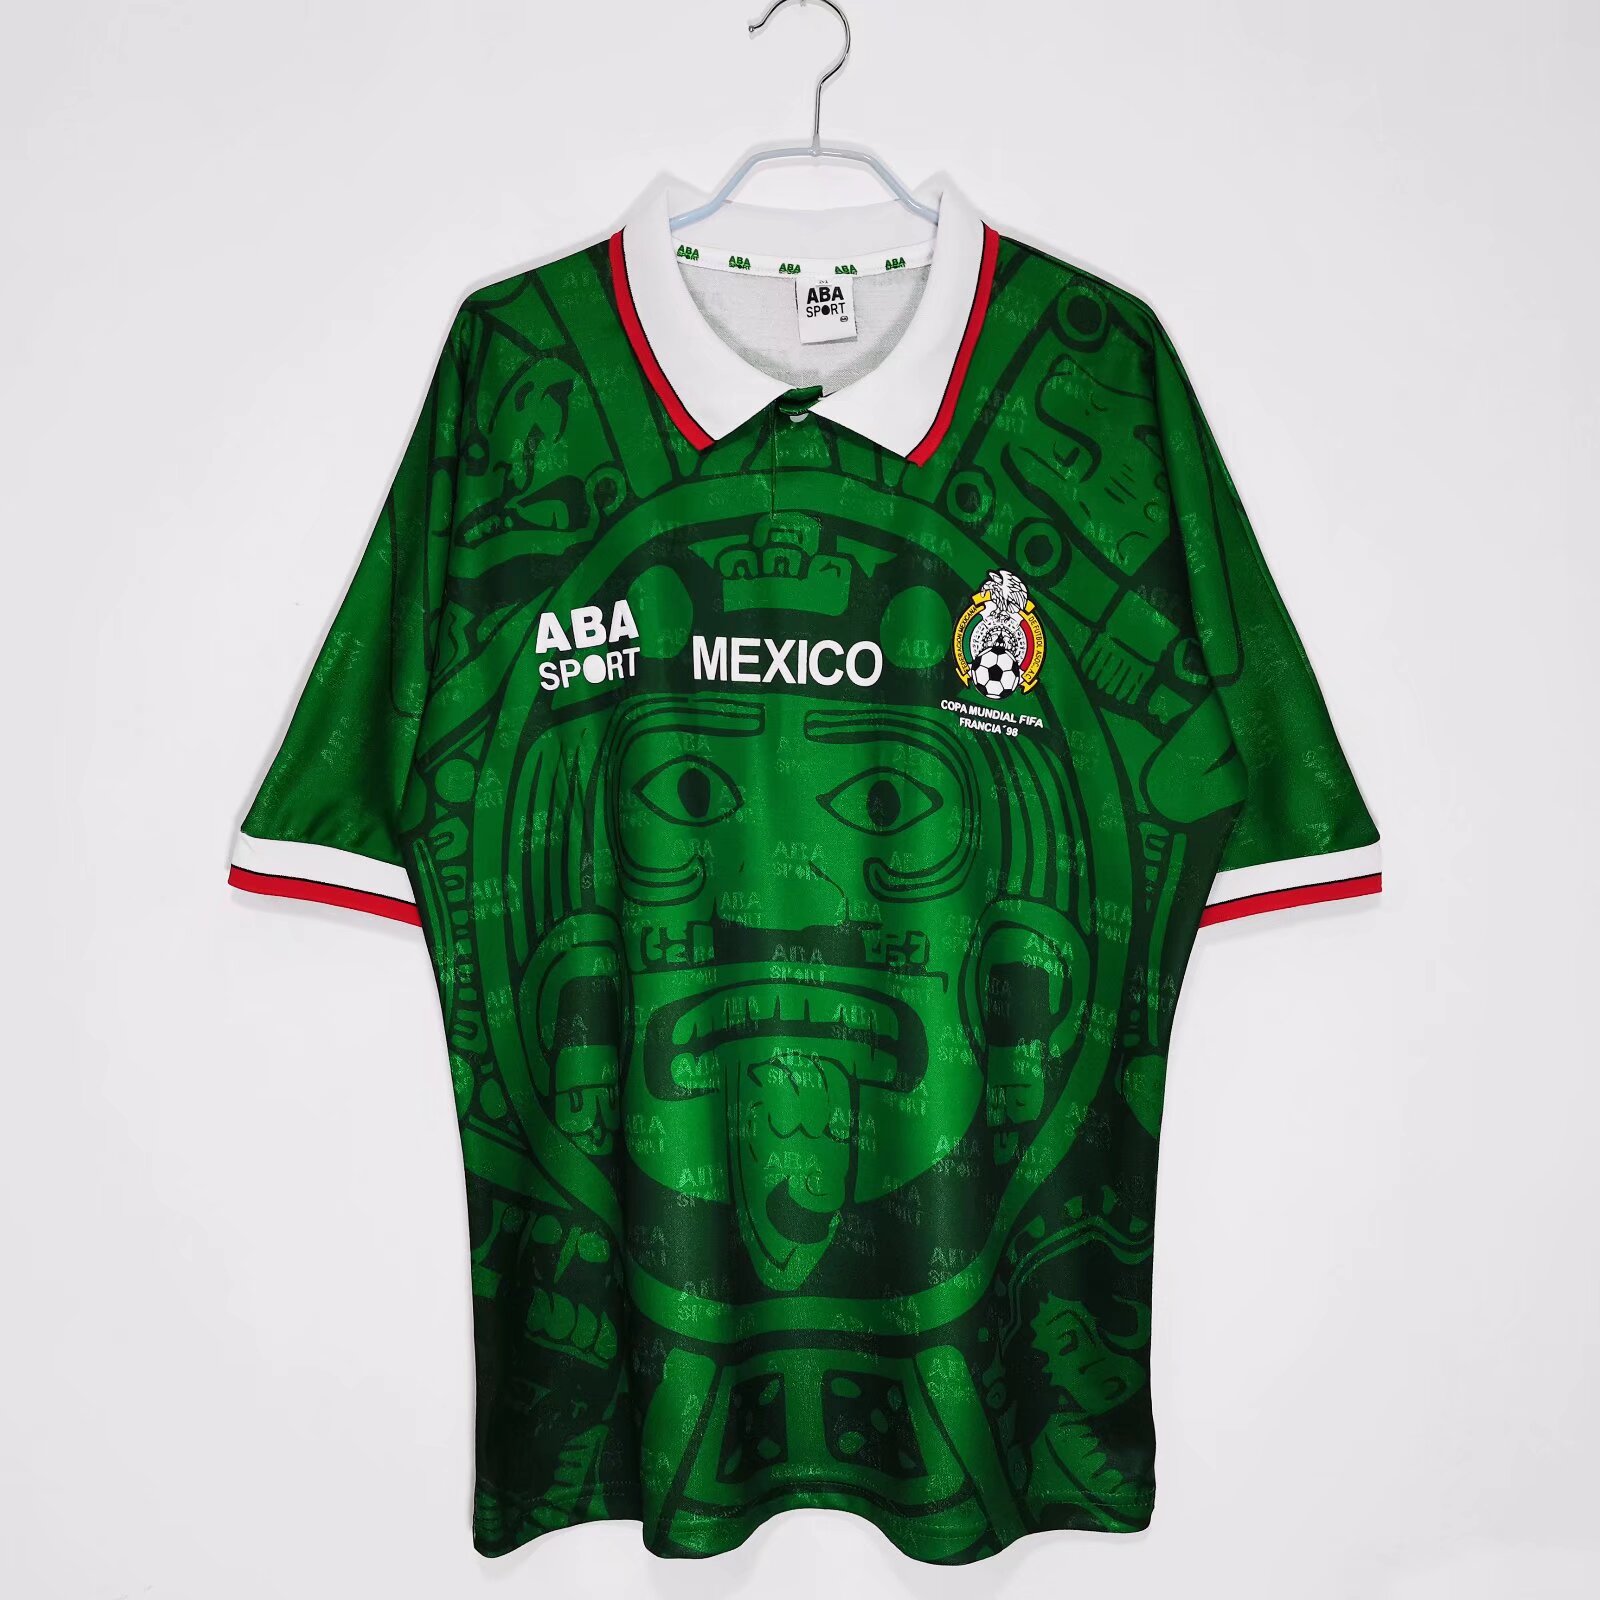 1998 Mexico national football team AWAY retro